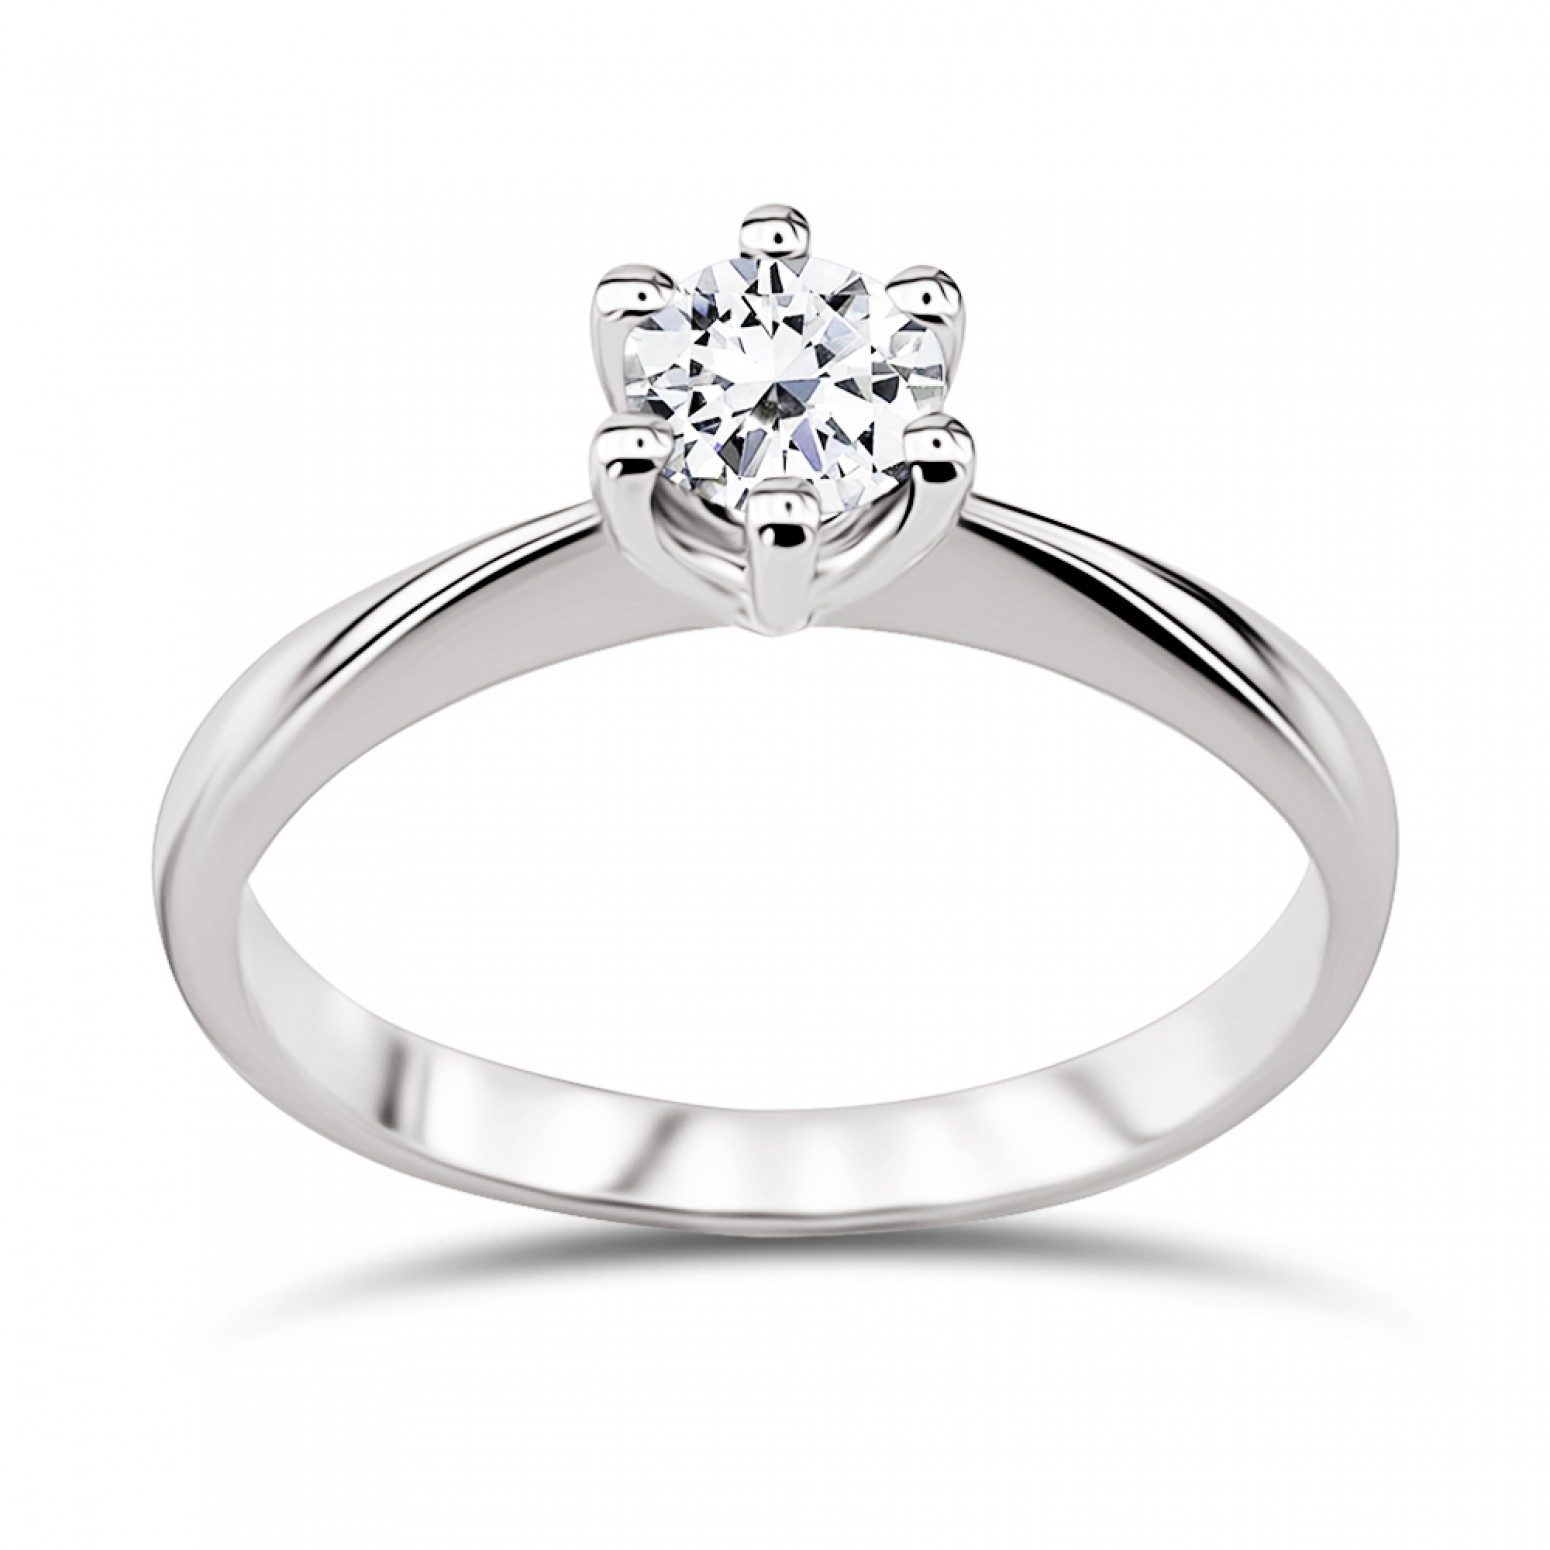 Μονόπετρο δαχτυλίδι Κ18 λευκόχρυσο με διαμάντι 0.30ct, VS2, G από το GIA da3517 ΔΑΧΤΥΛΙΔΙΑ ΑΡΡΑΒΩΝΑ Κοσμηματα - chrilia.gr